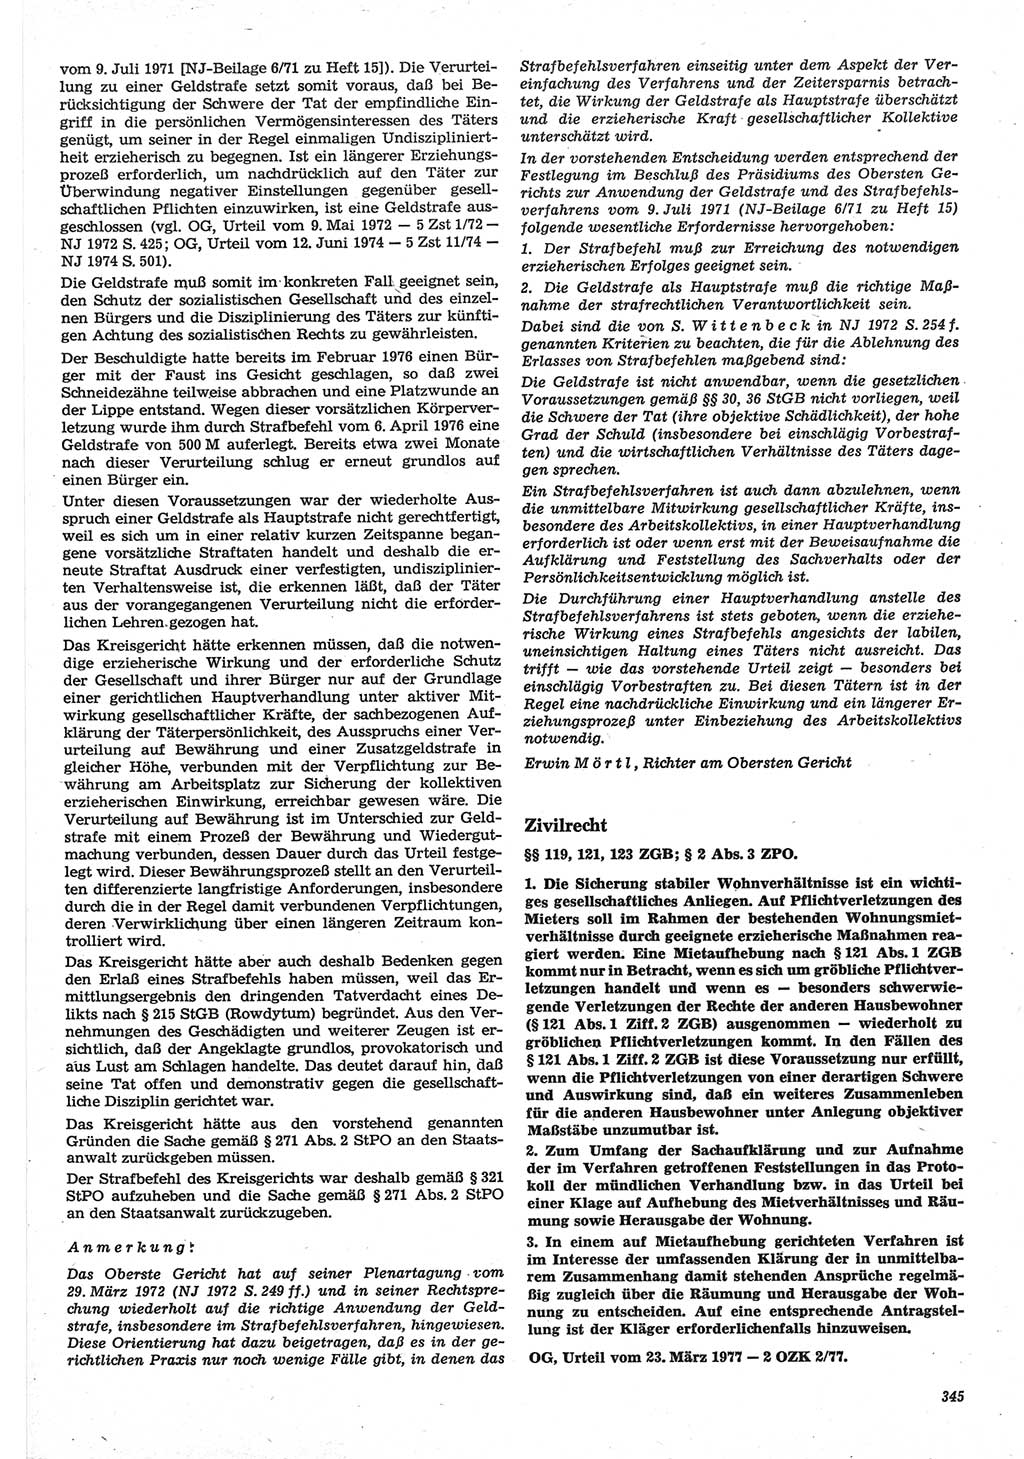 Neue Justiz (NJ), Zeitschrift für Recht und Rechtswissenschaft-Zeitschrift, sozialistisches Recht und Gesetzlichkeit, 31. Jahrgang 1977, Seite 345 (NJ DDR 1977, S. 345)